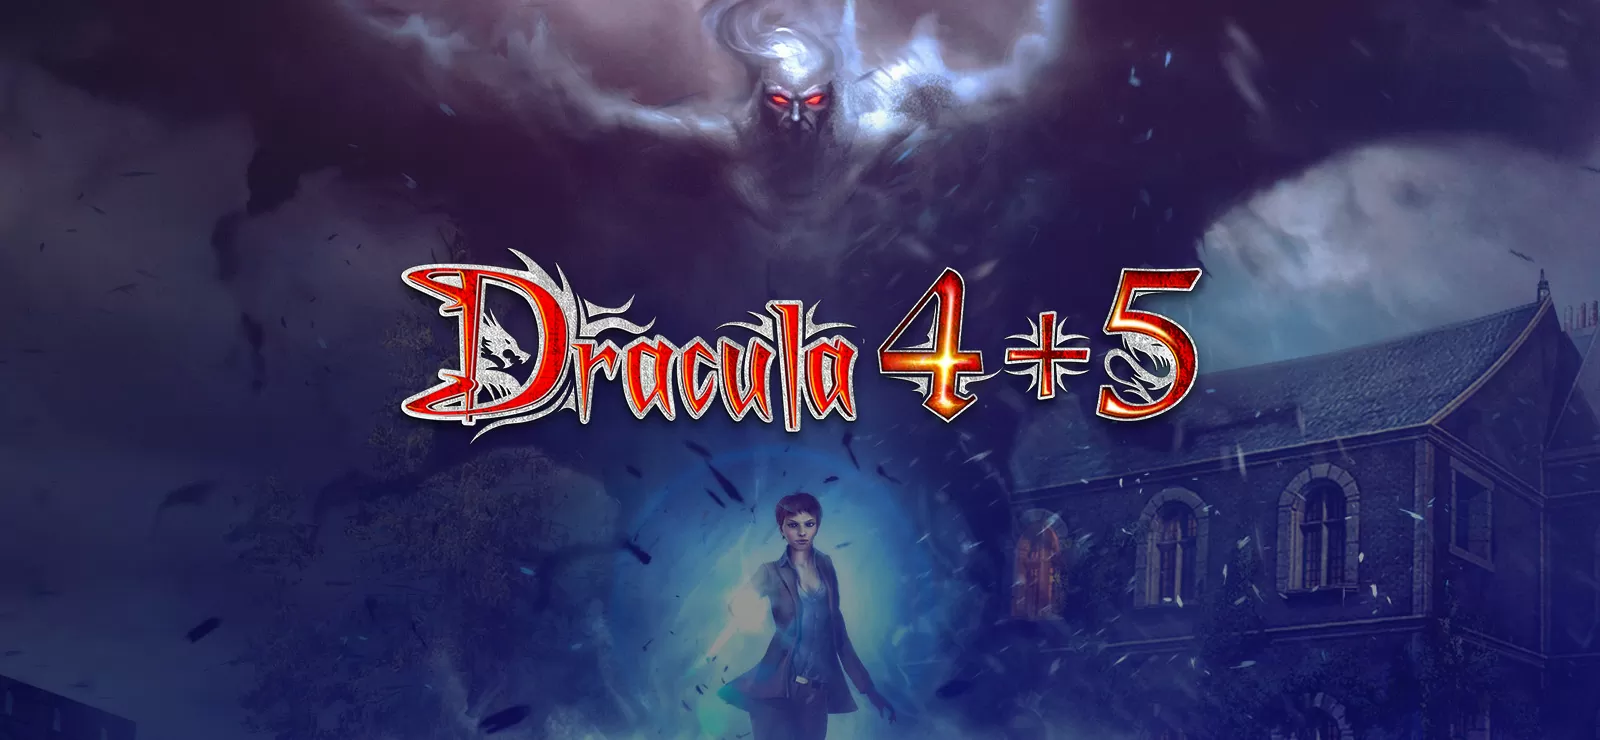 Recensione Dracula 4 e 5: l’edizione speciale Steam